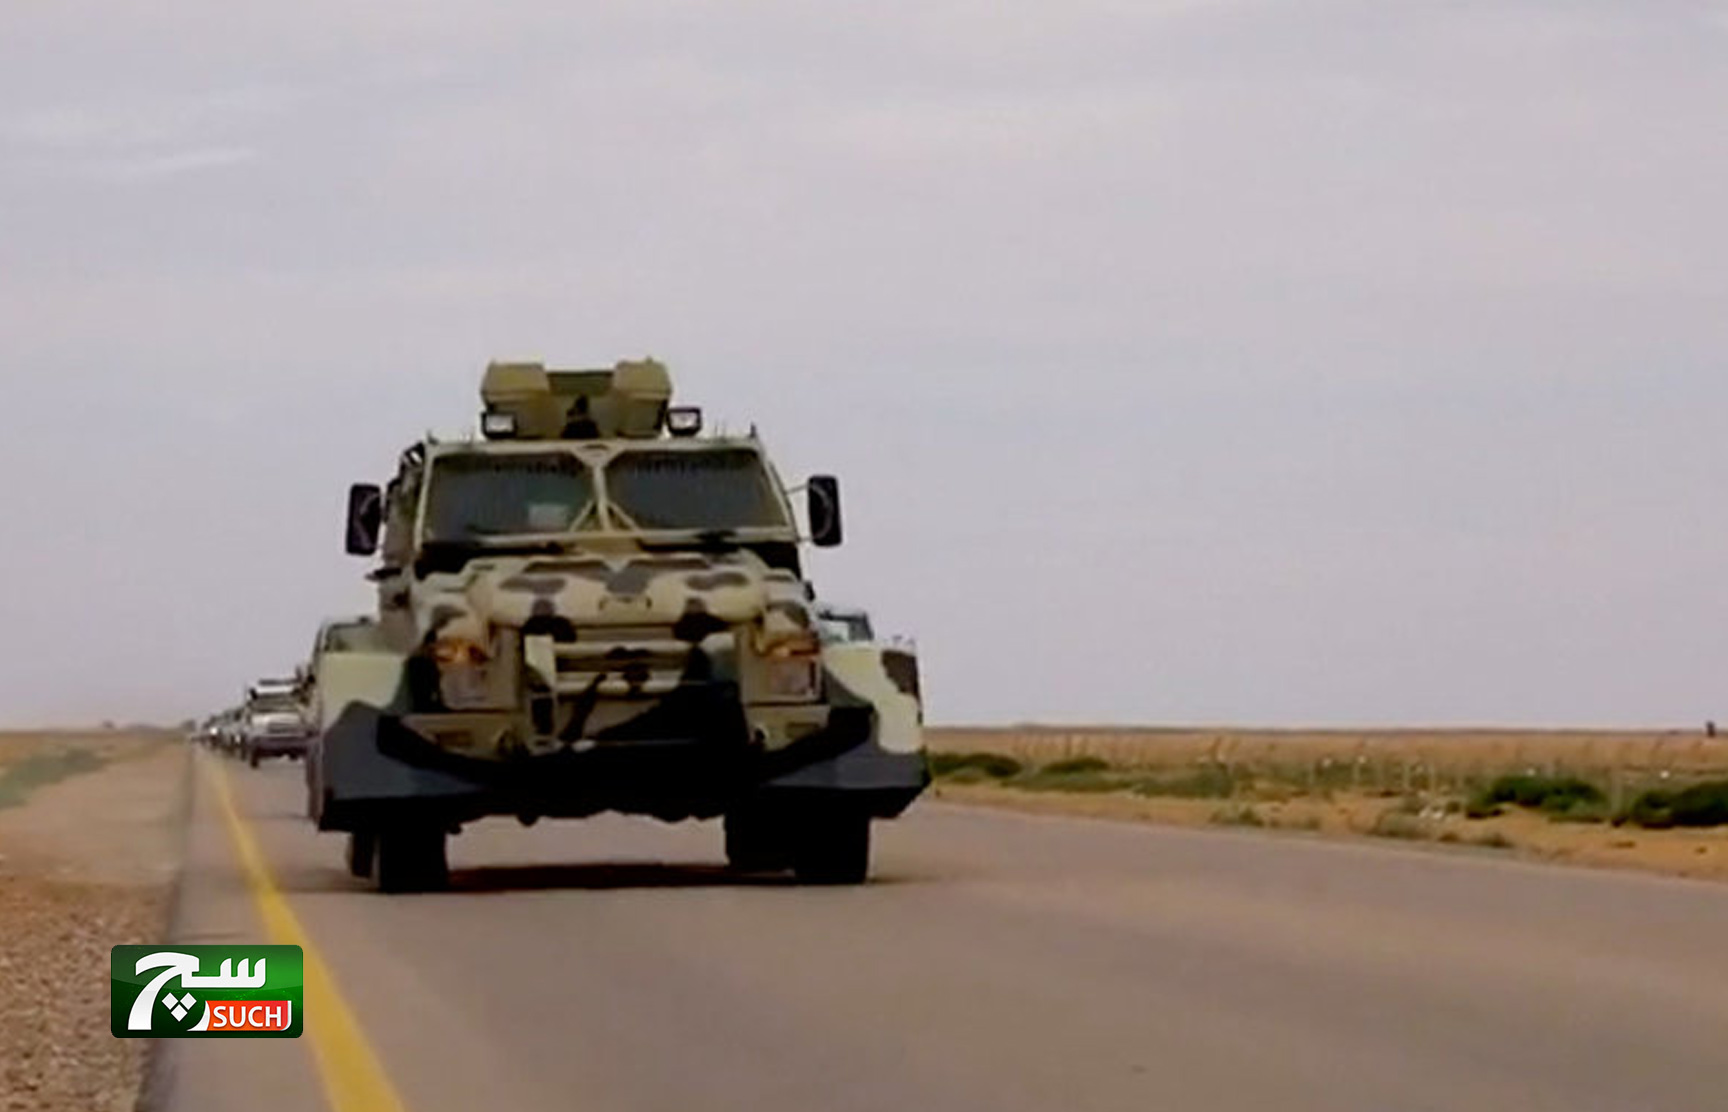 الجيش الليبي يعلن سيطرته على معسكر اللواء الرابع جنوب غربي العاصمة